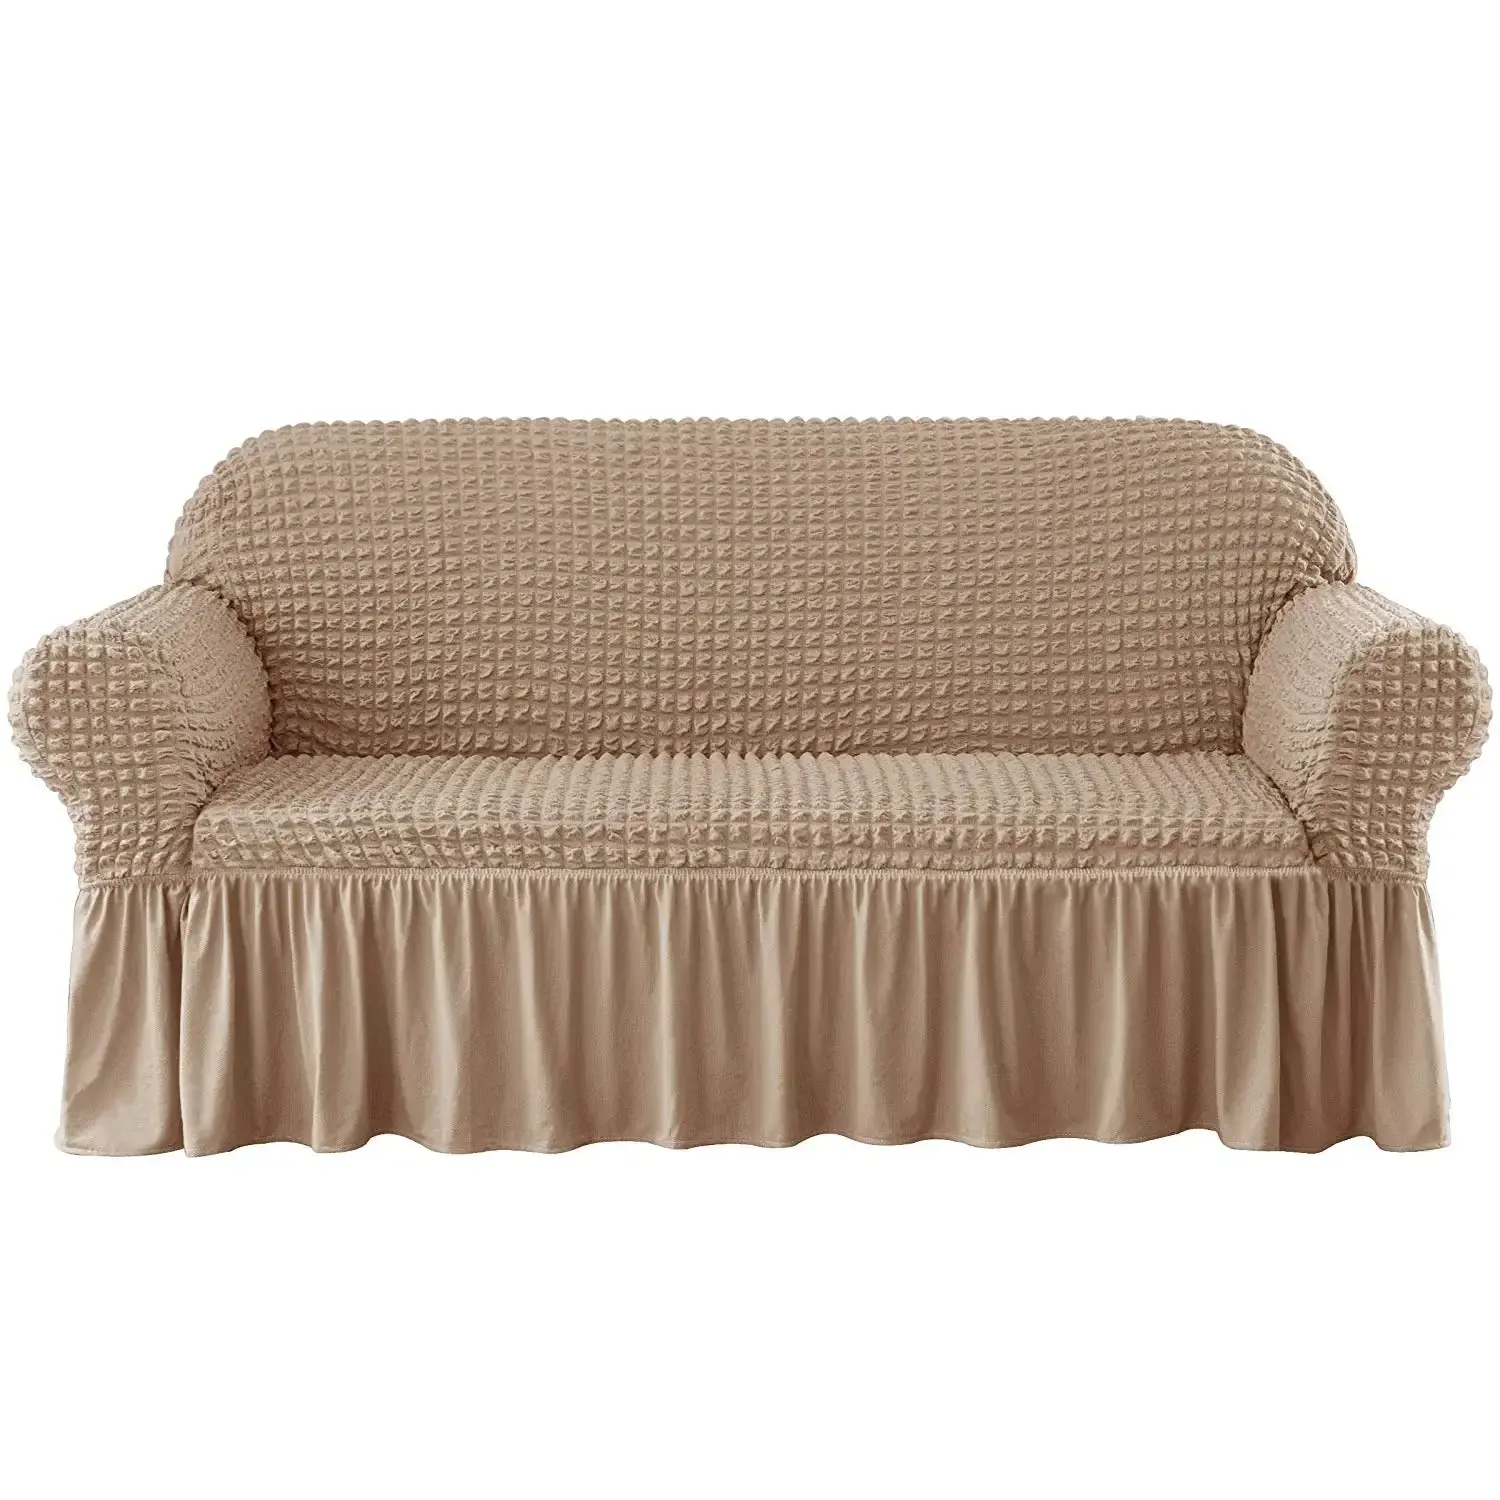 PPG-Funda protectora elegante para muebles, juego de fundas elásticas para sofá con faldón, 3 asientos, color topo/Camel